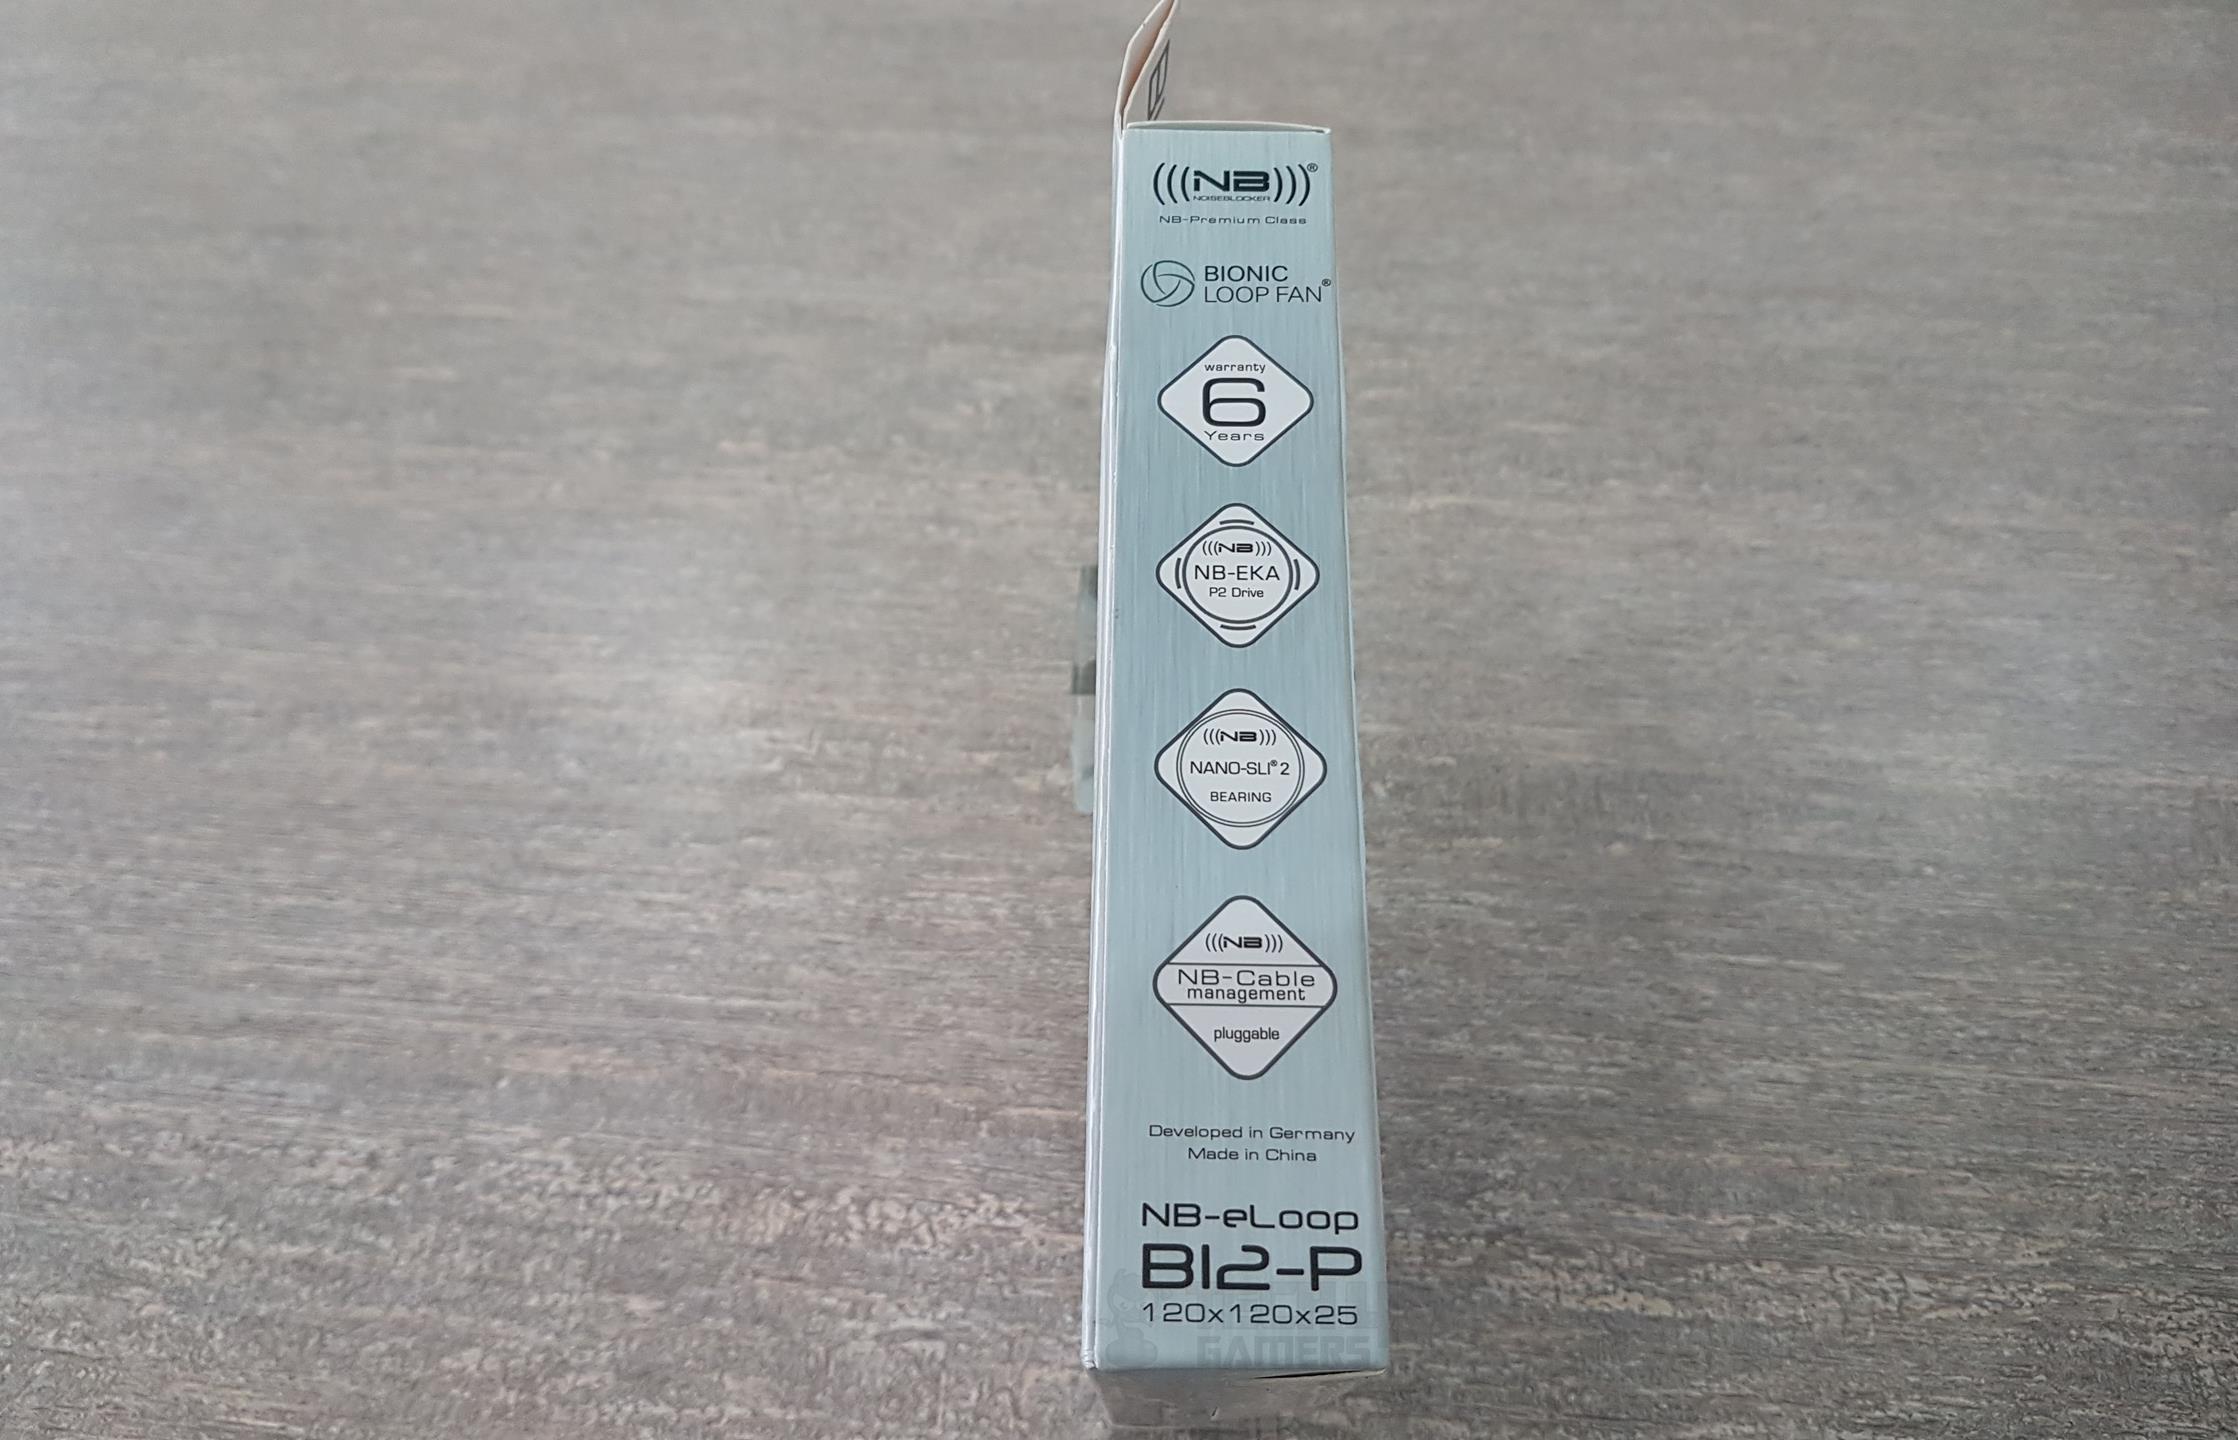 NB-eLoop B12-PS, Right Side Packaging 